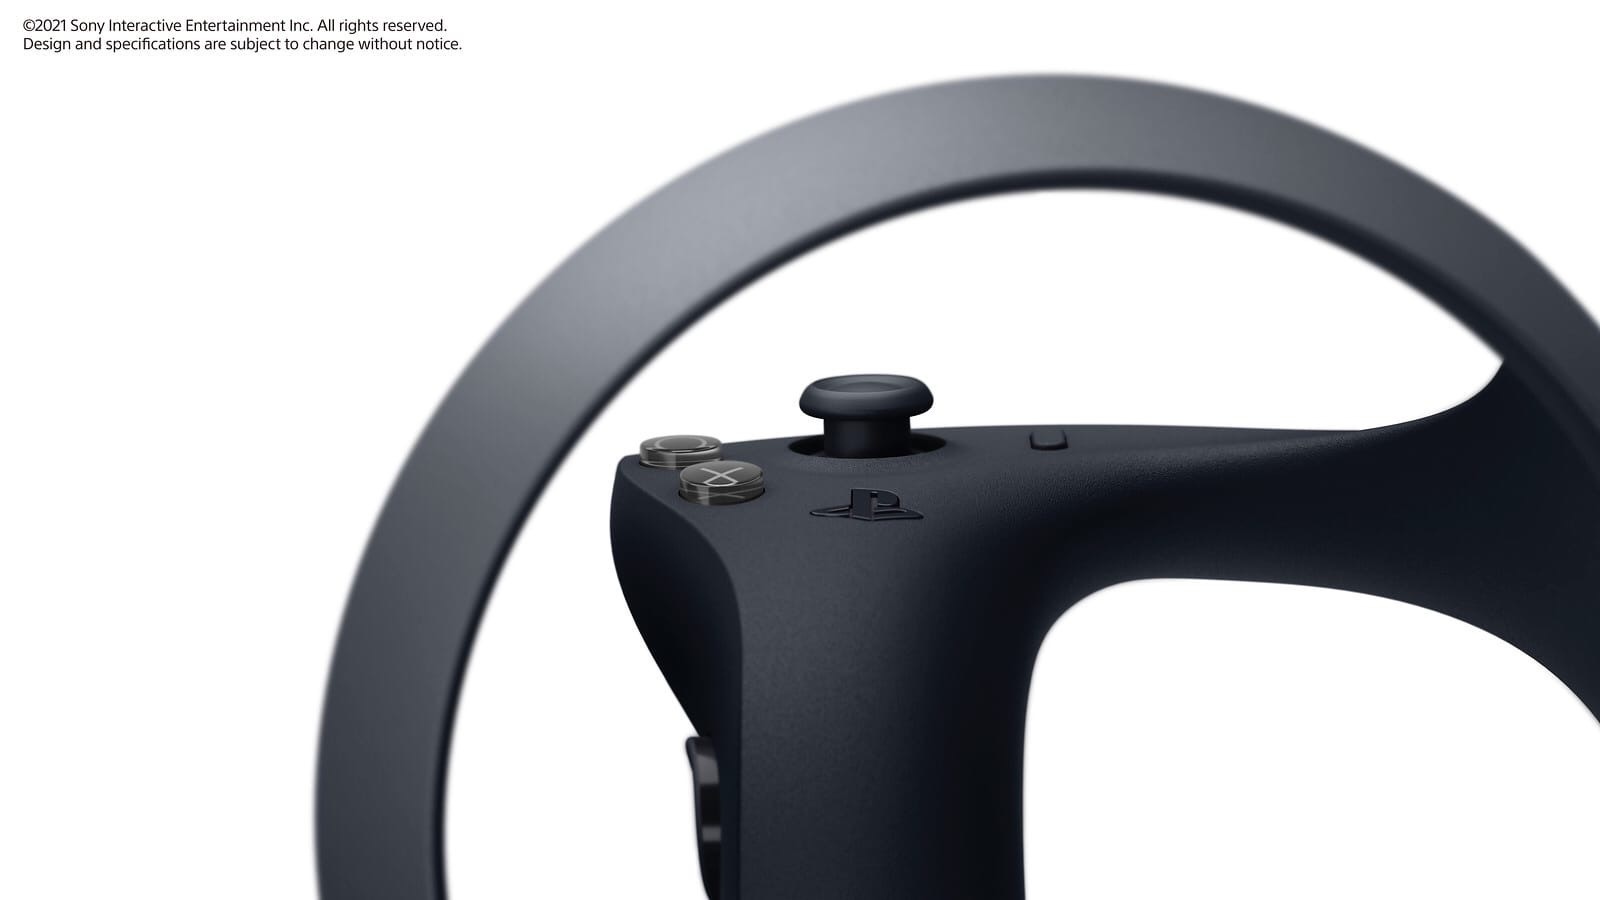 Первые изображения нового контроллера PlayStation 5 для виртуальной реальности